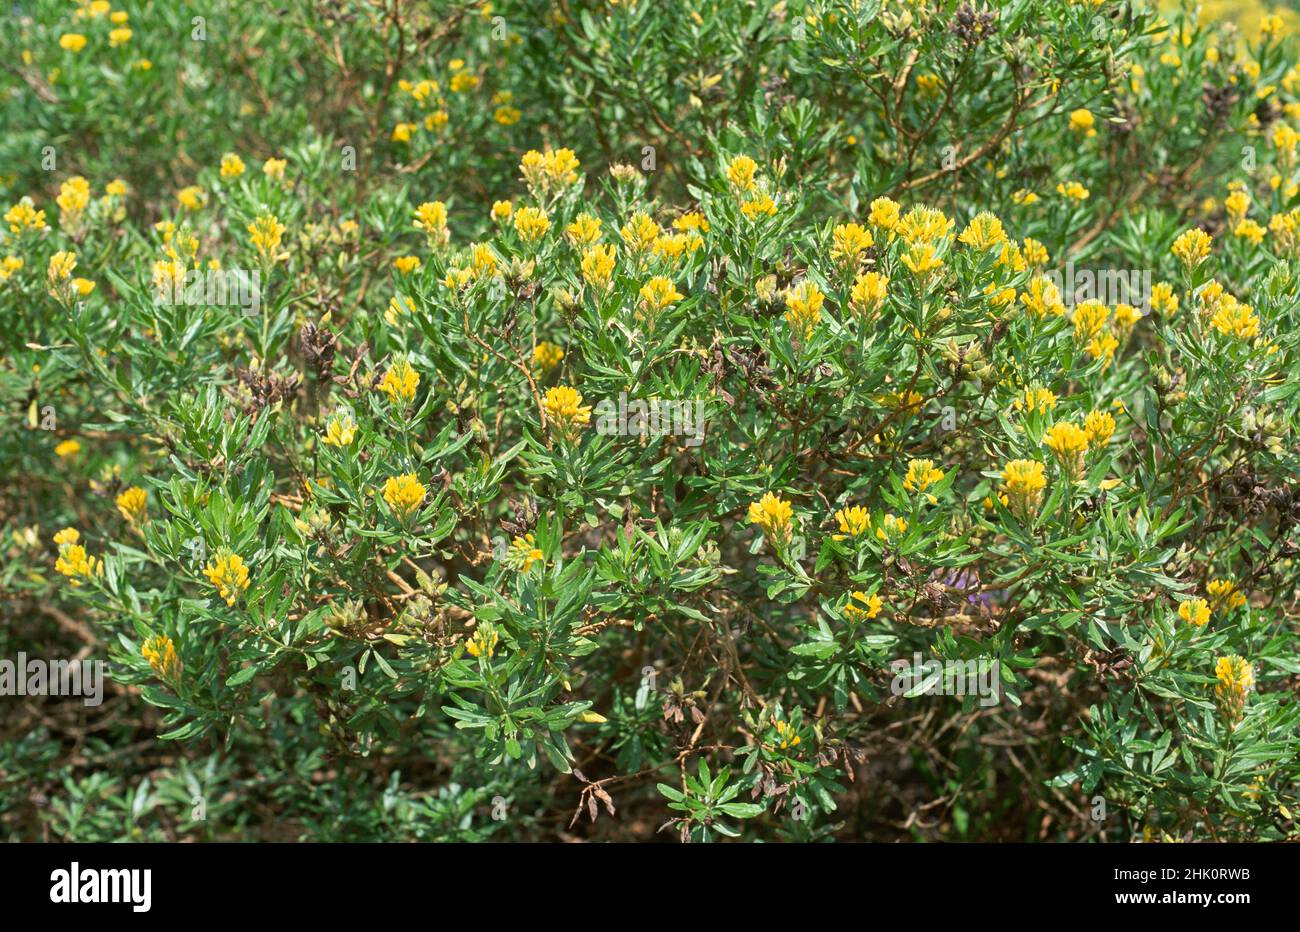 El escoba de hojas de aguja (Genista linifolia) es un arbusto nativo de las Islas Canarias, el sur de la Península Ibérica y el noroeste de África. Foto de stock